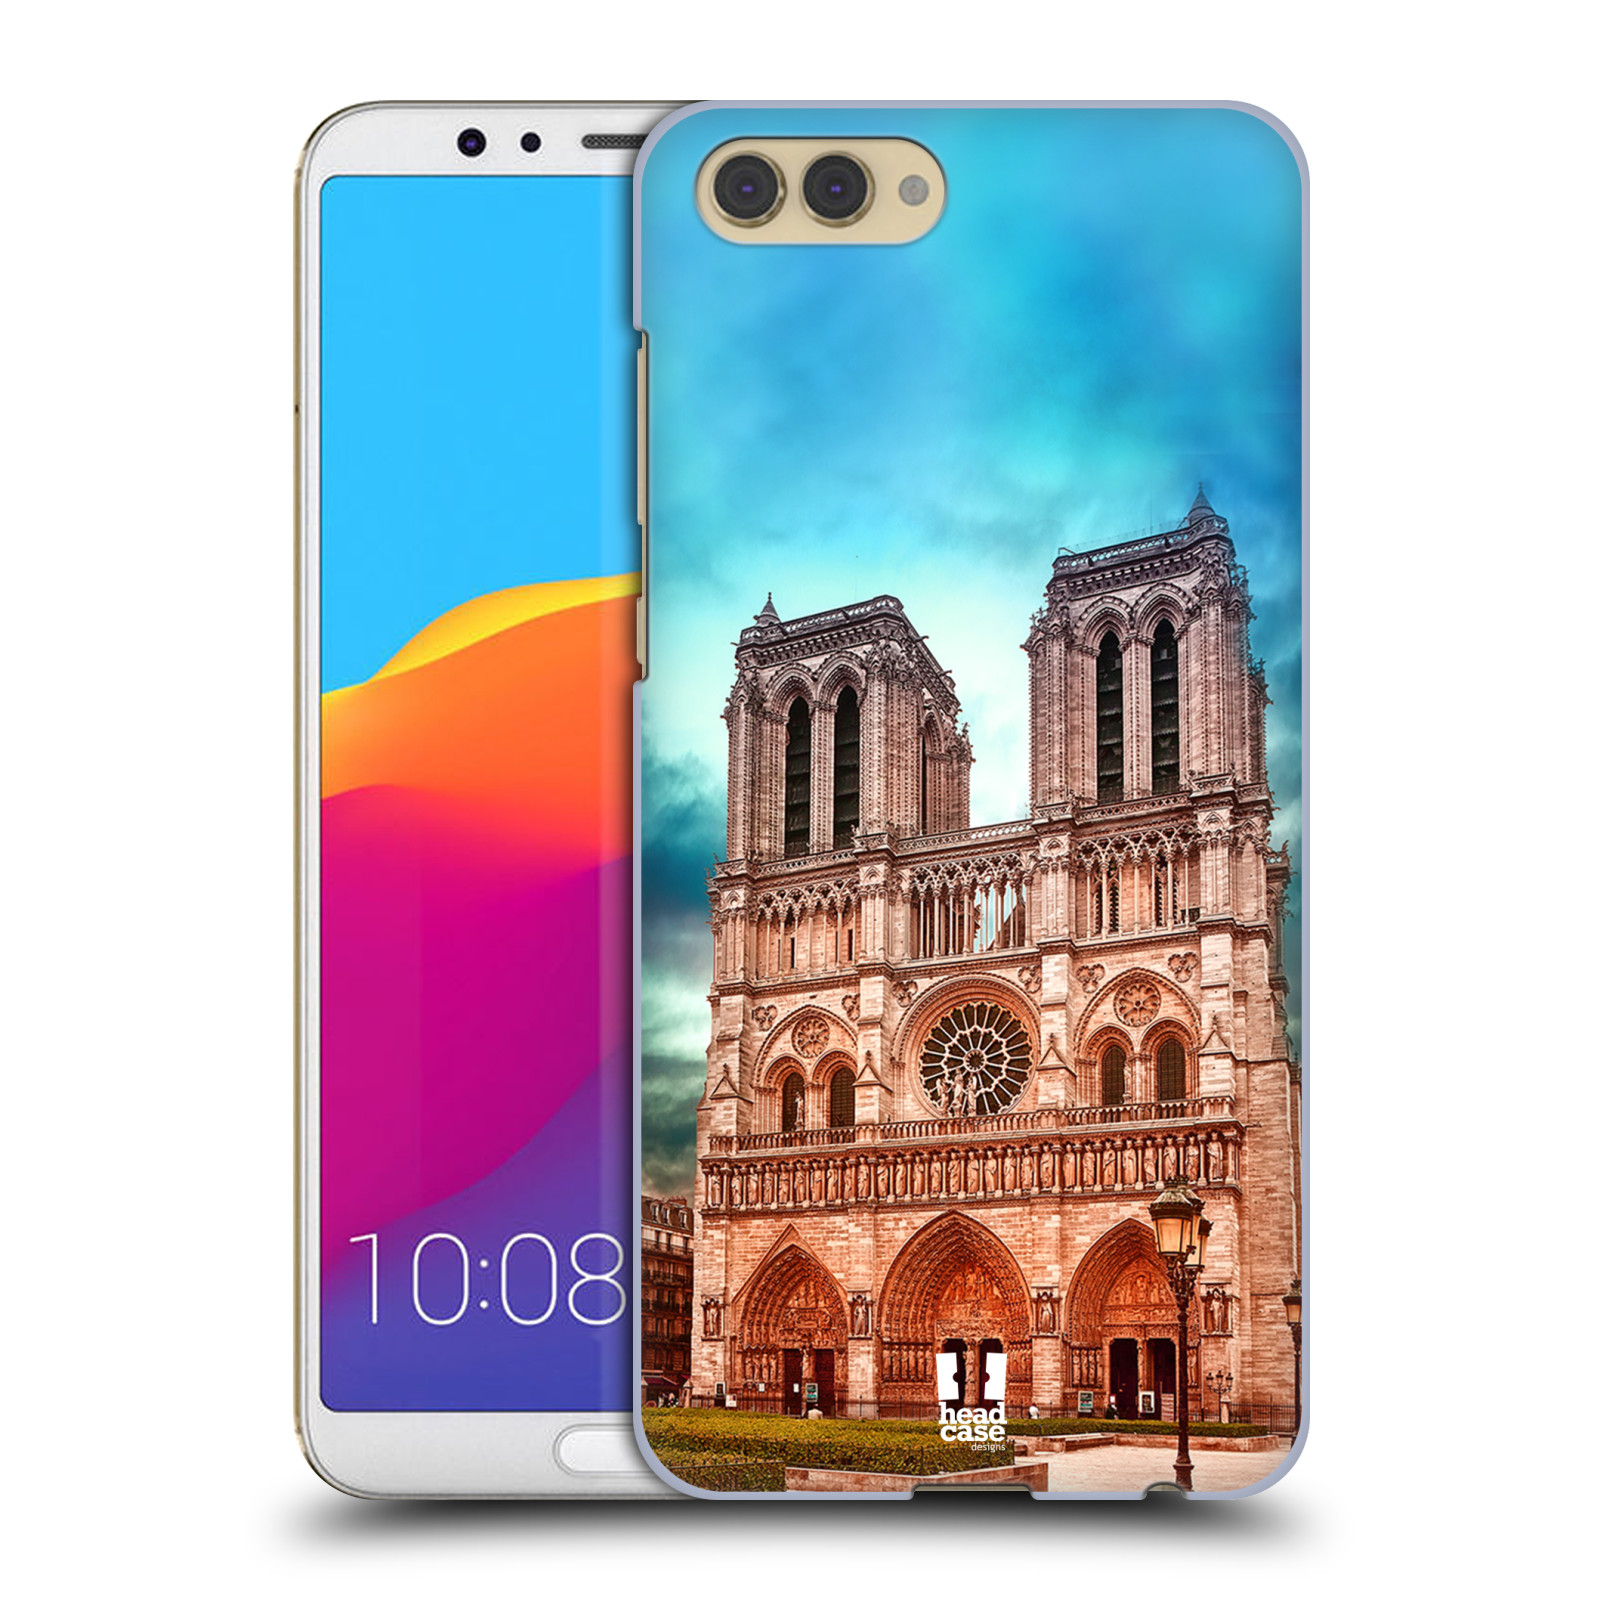 Pouzdro na mobil HONOR View 10 / V10 - HEAD CASE - historická místa katedrála Notre Dame